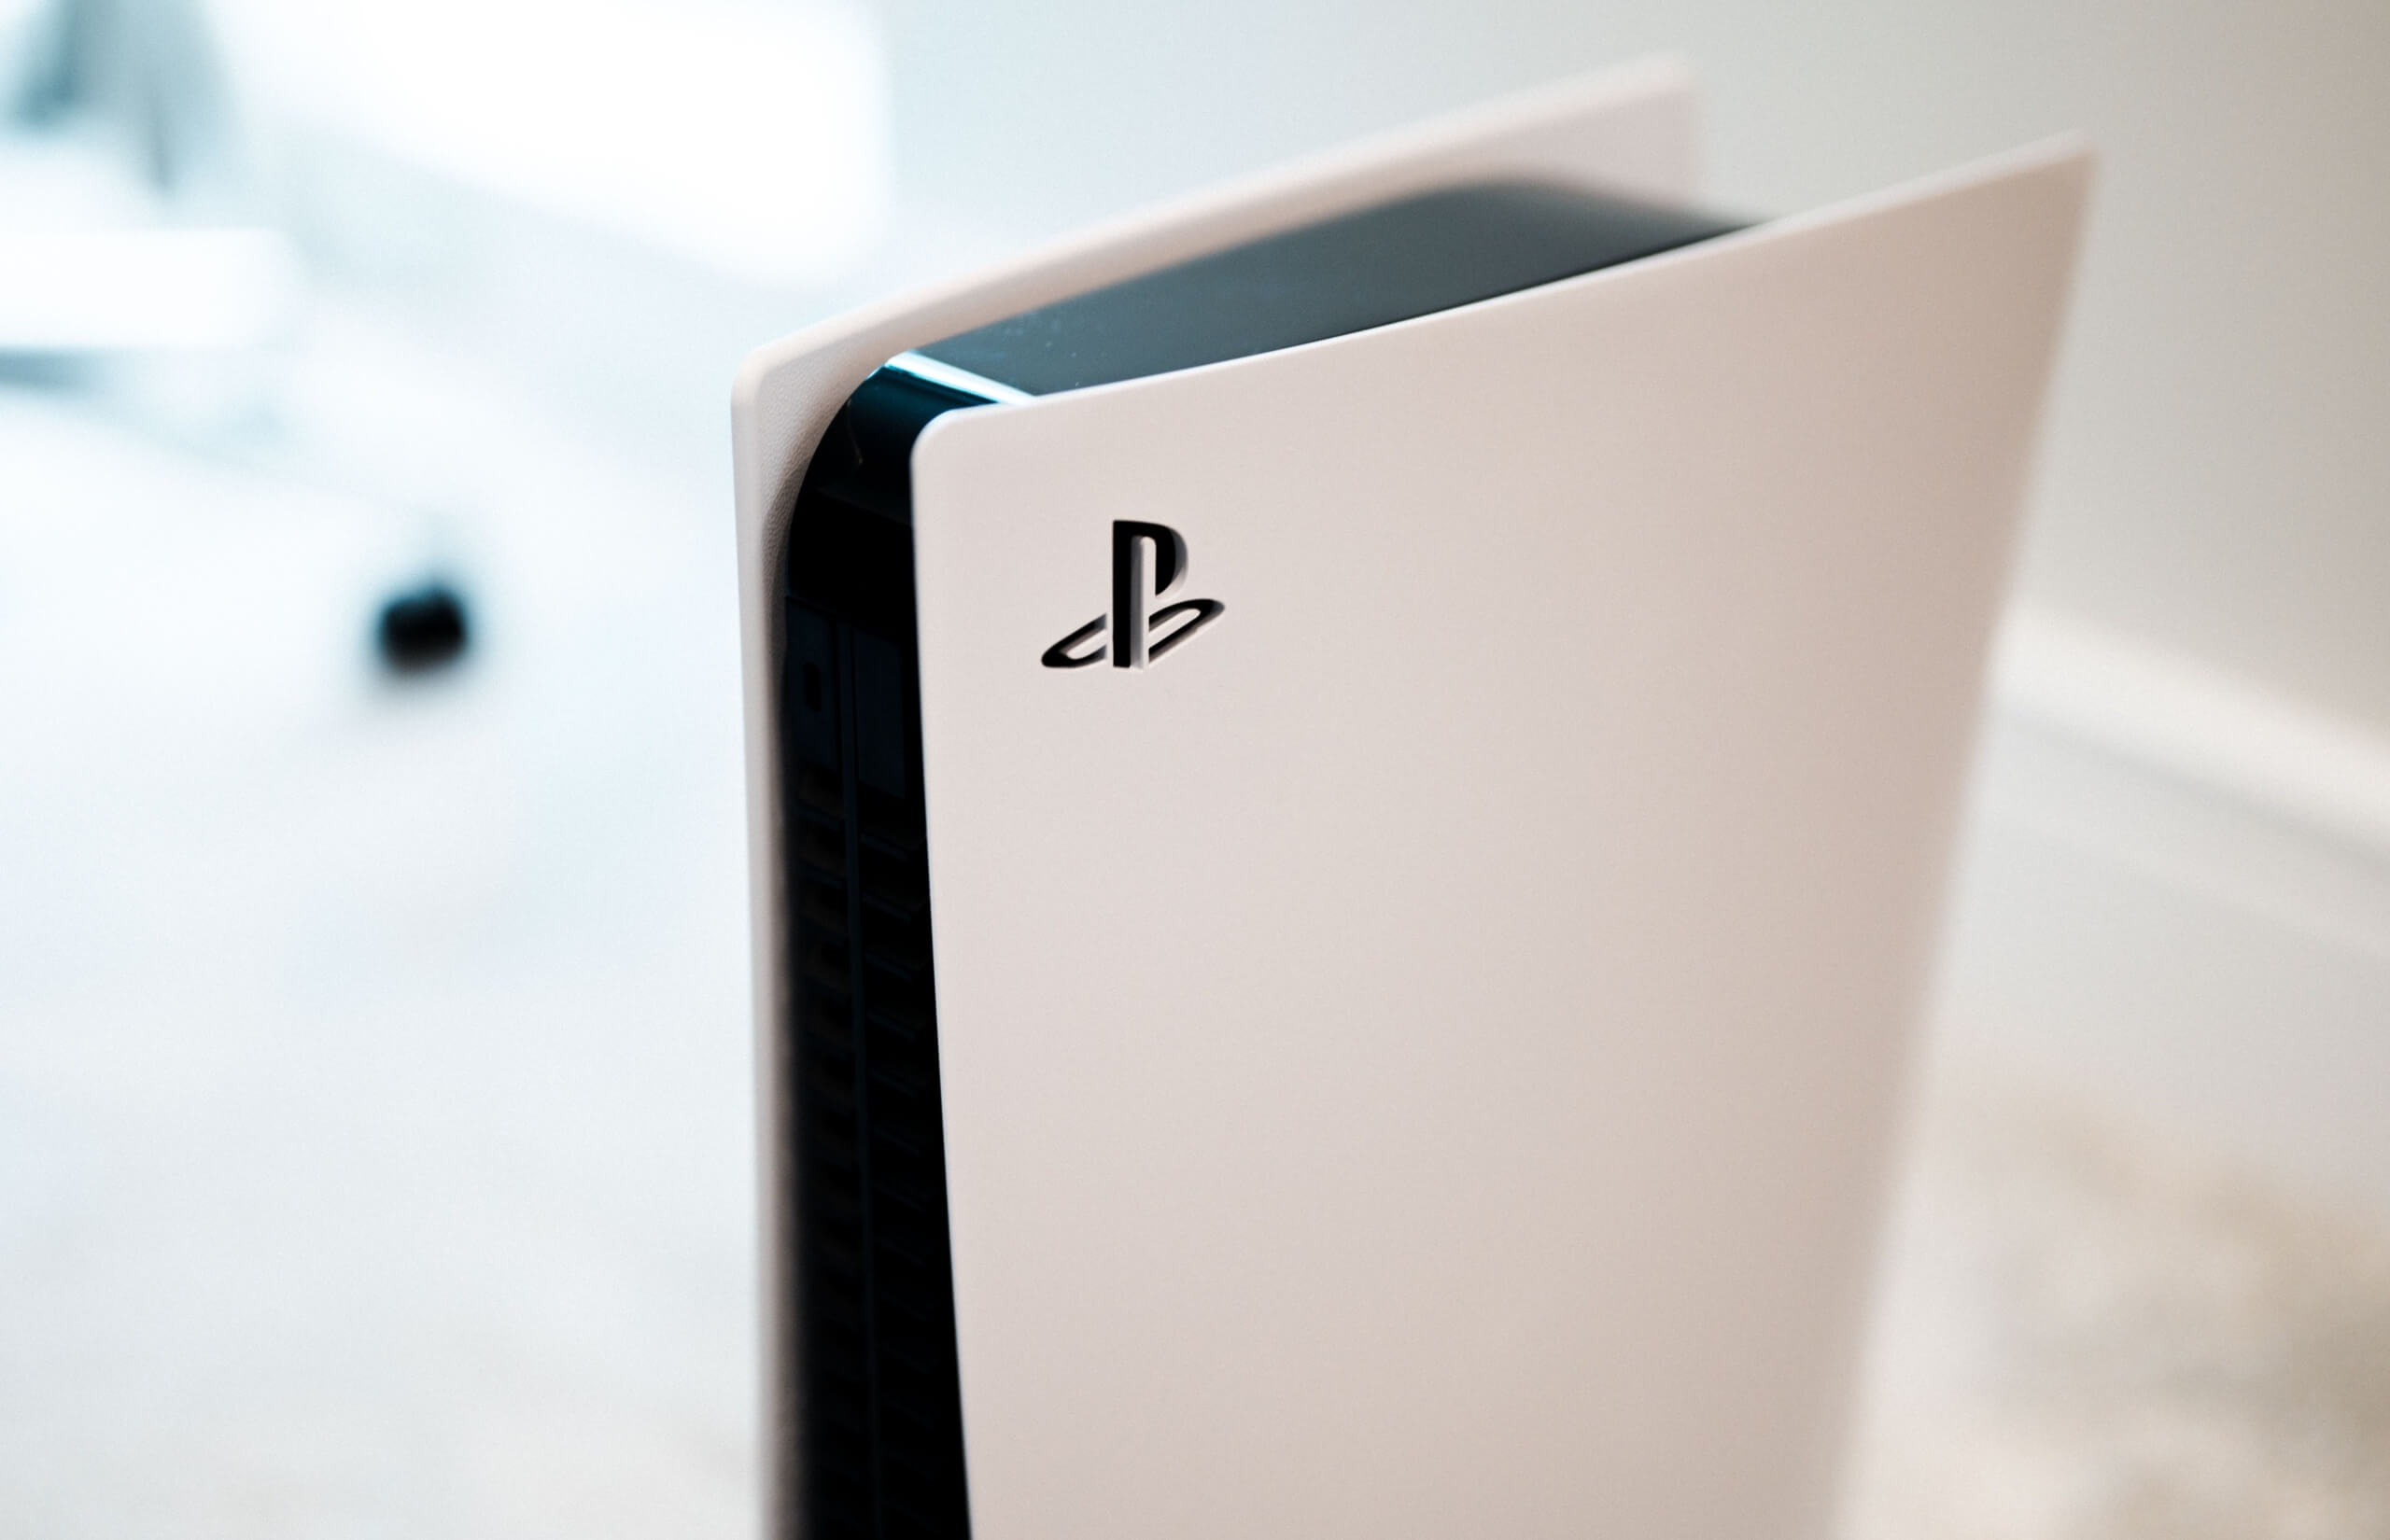 Sony продала 19,3 млн PlayStation 5 и ожидает увеличения поставок консолей в этом году